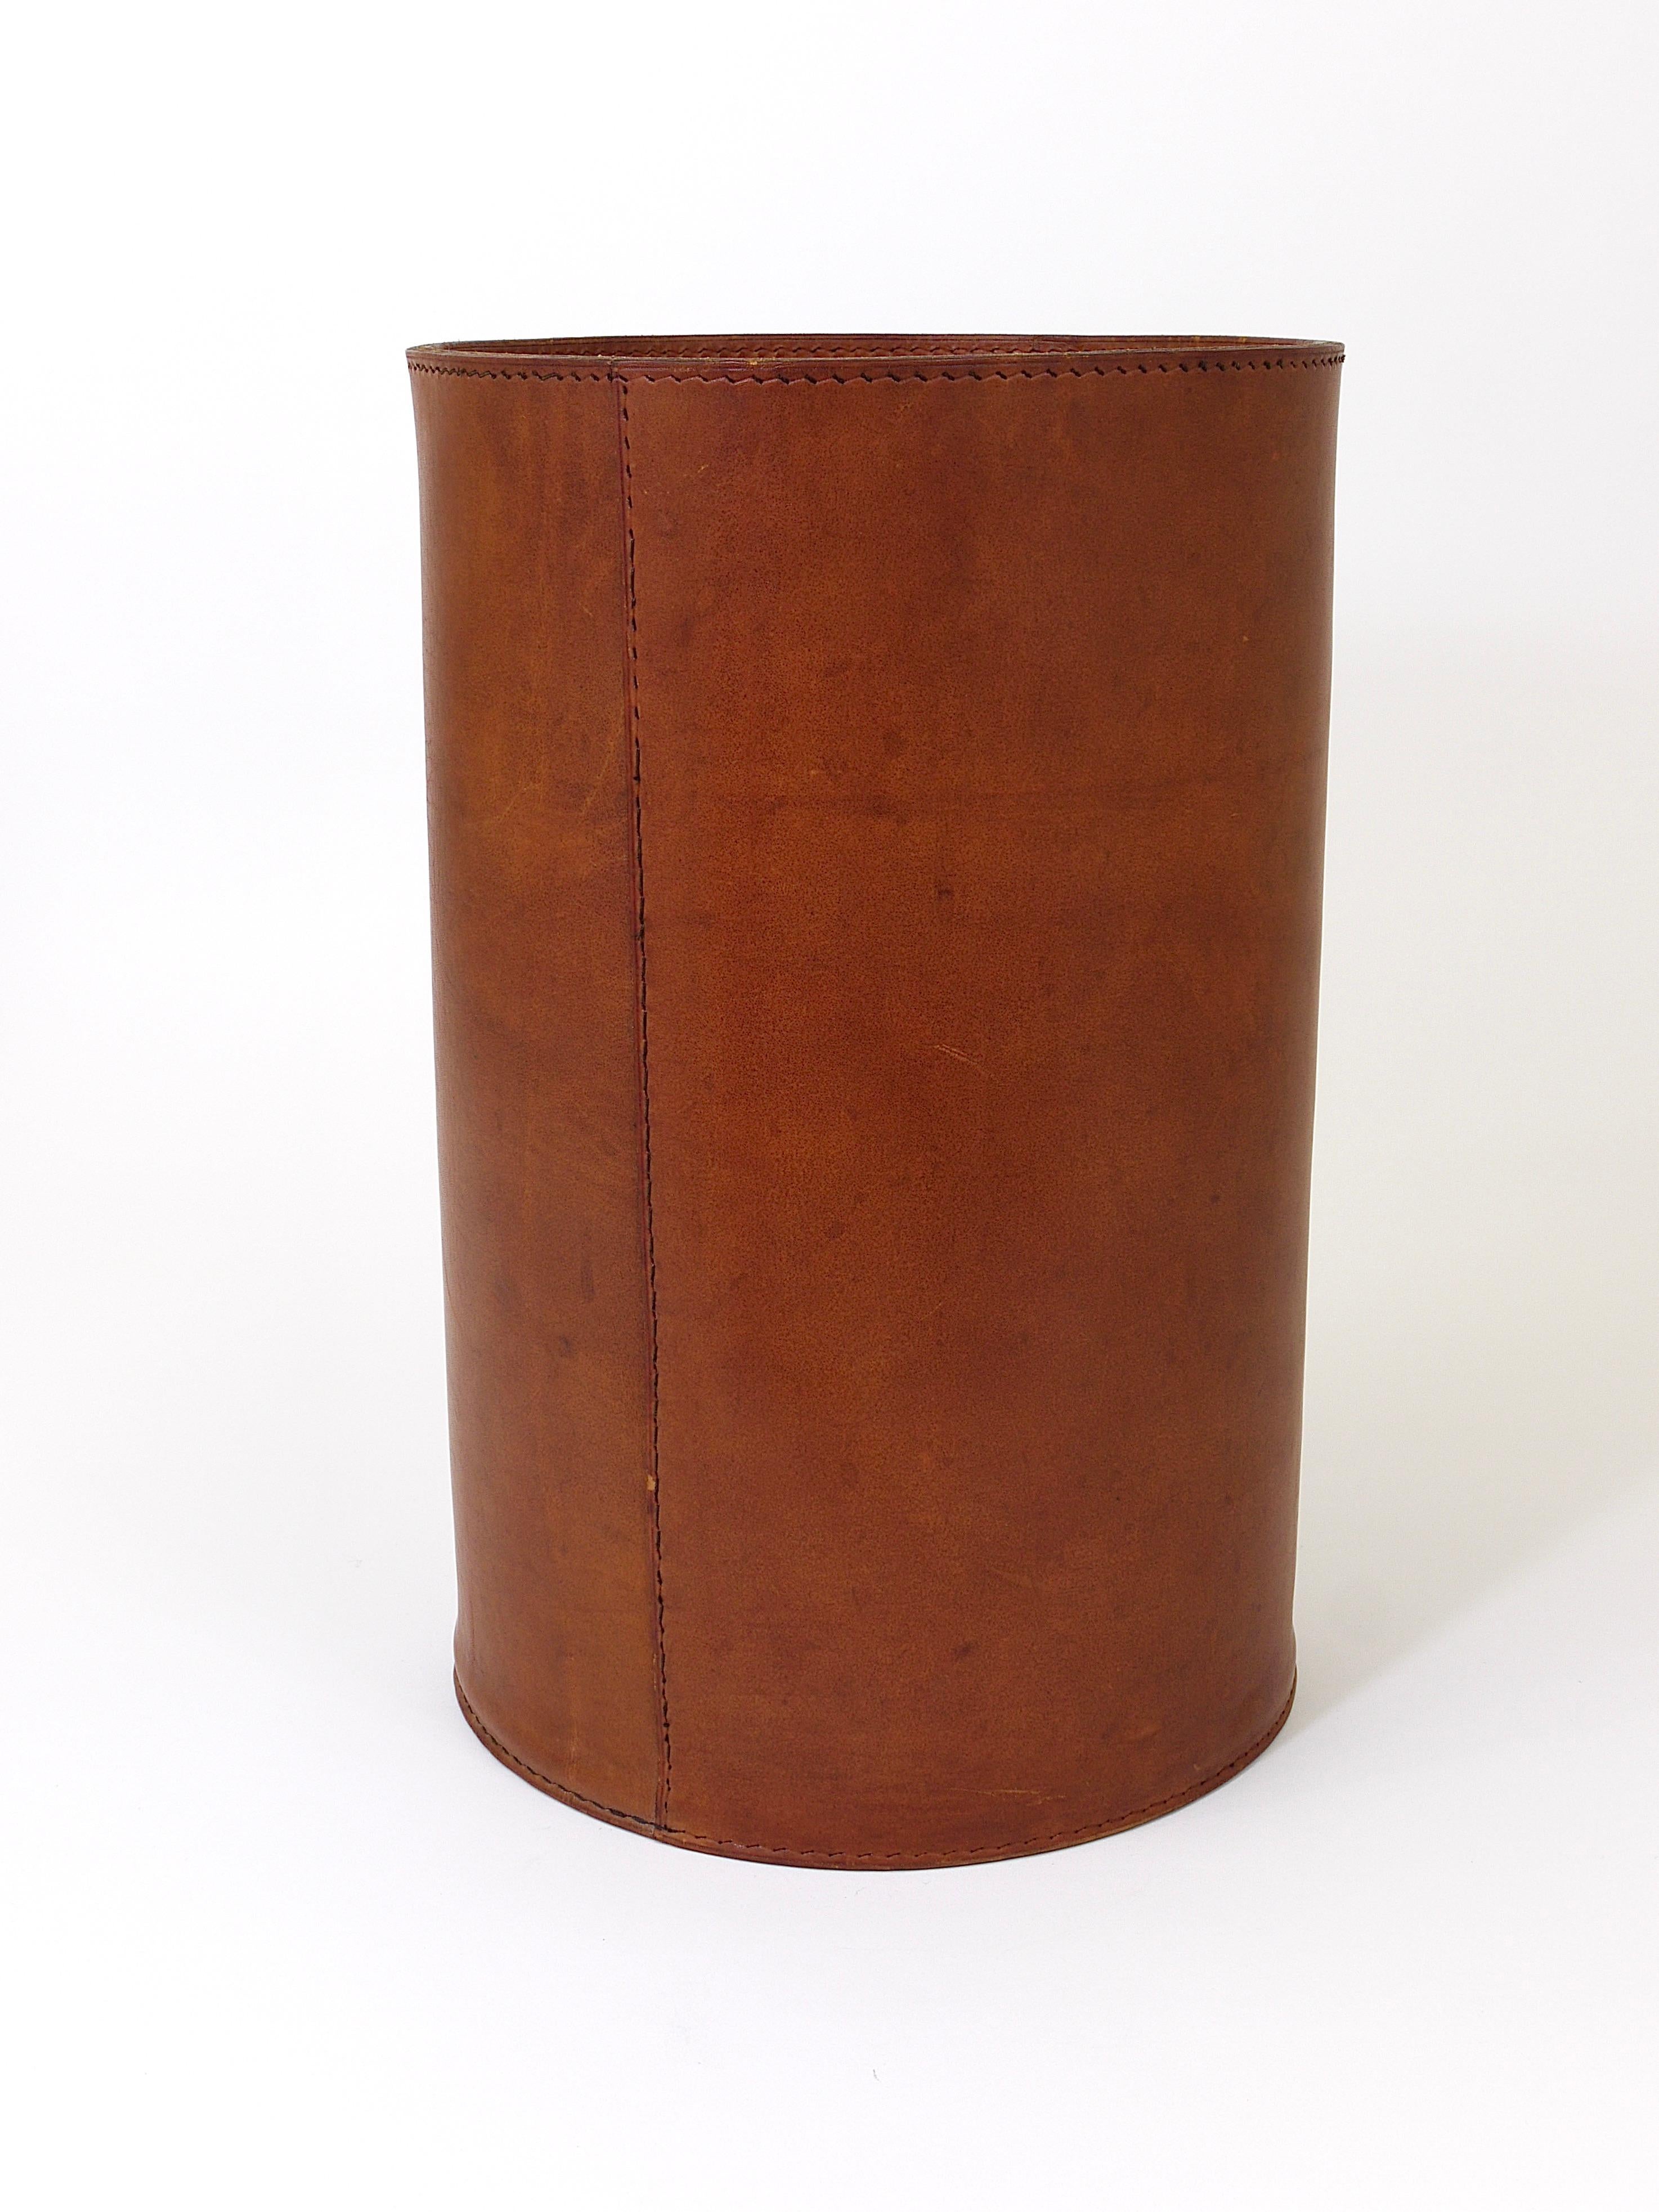 Midcentury Carl Auböck Brown Tan Leather Wastepaper Basket, Austria, 1950s 2